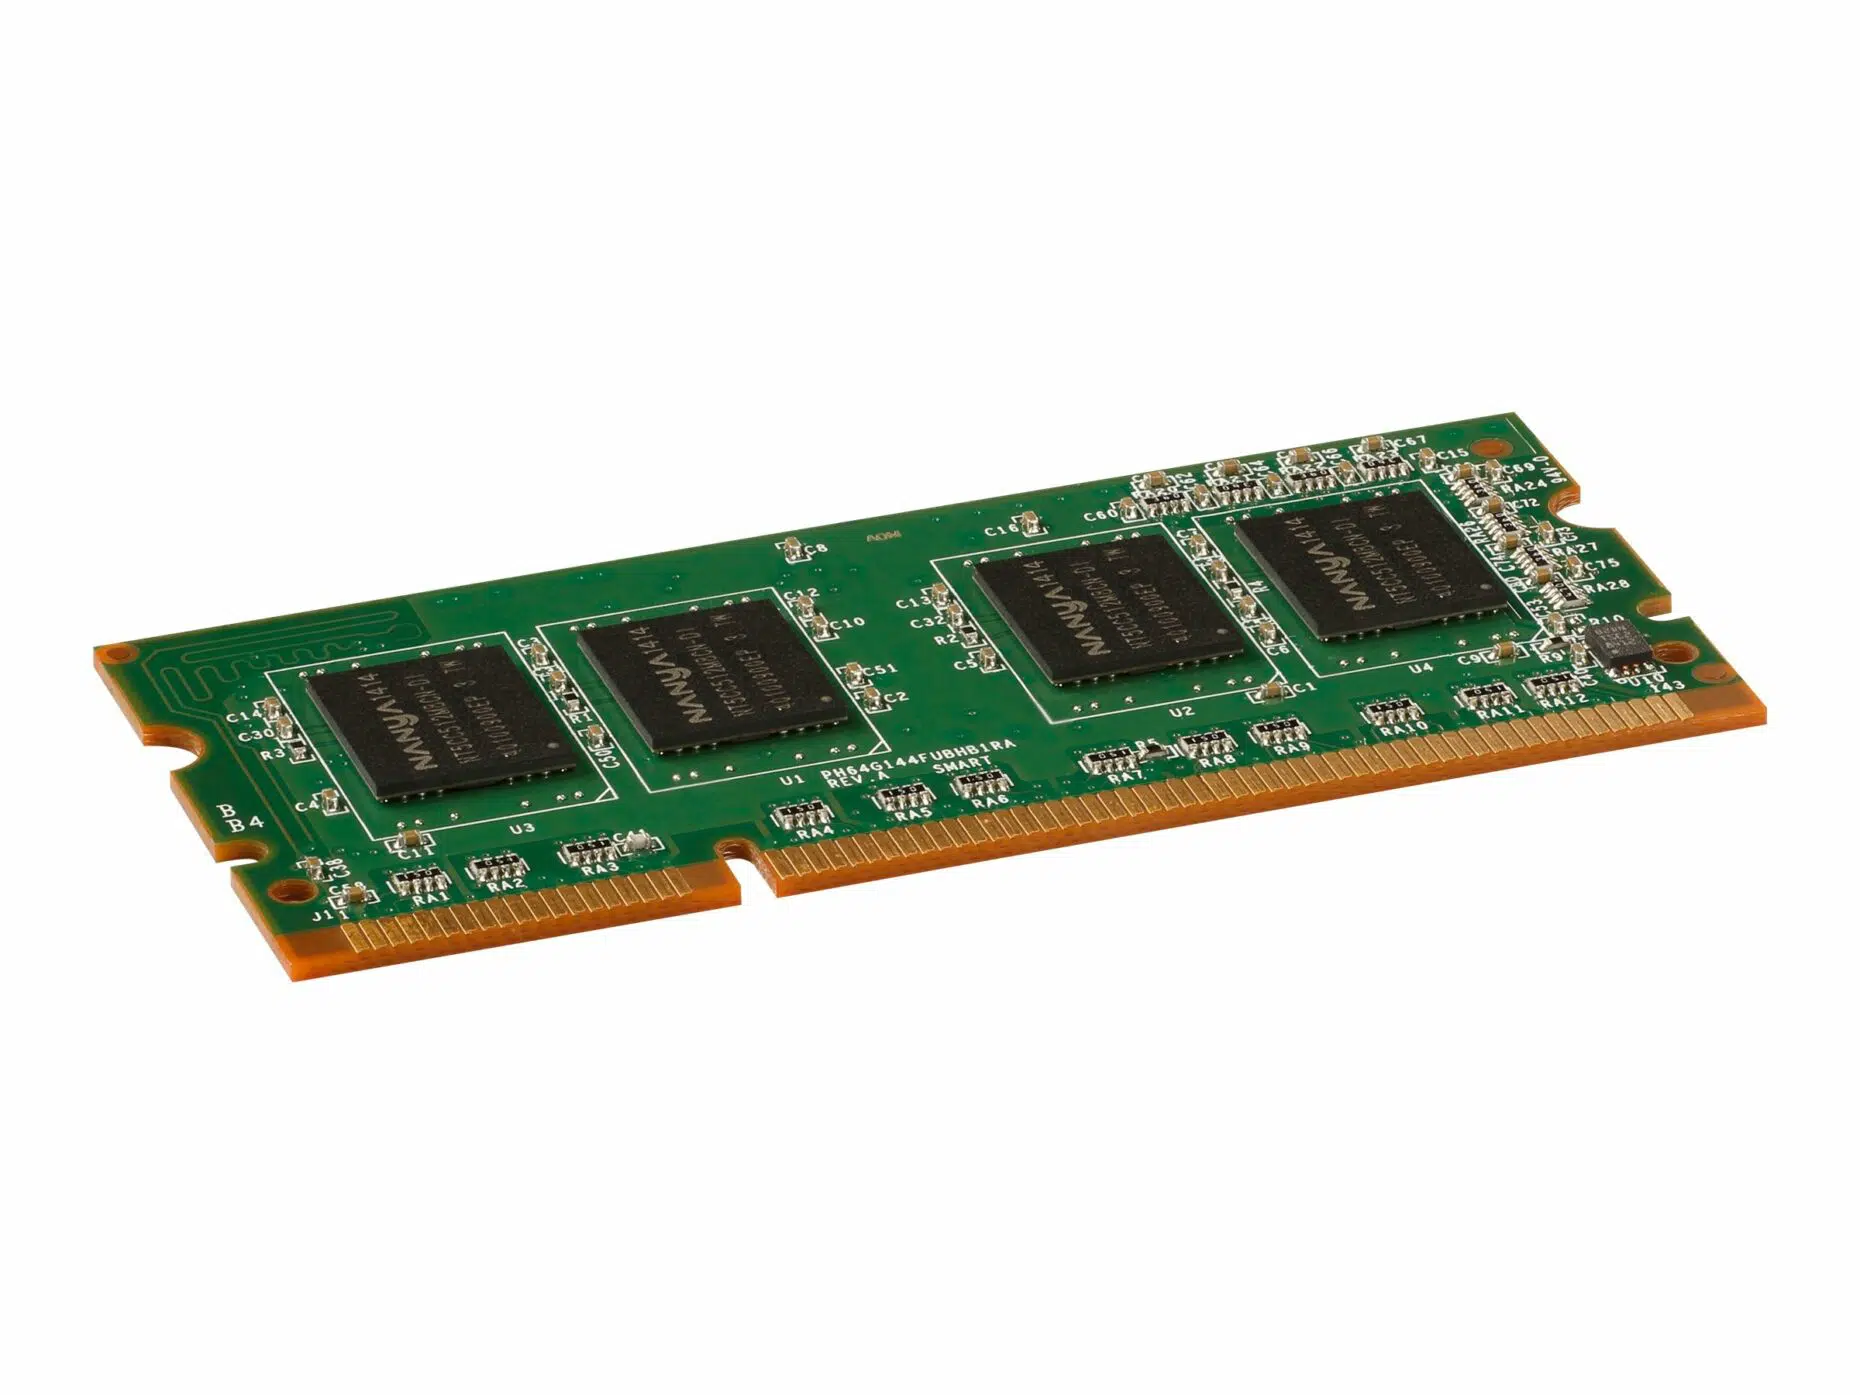 SODIMM 144 Pin. Ddr3-1600 ddr3 SDRAM 800 МГЦ. Ddr2 2gb 800mhz. Hynix ddr2 2gb 800mhz. 800 мгц оперативной памяти